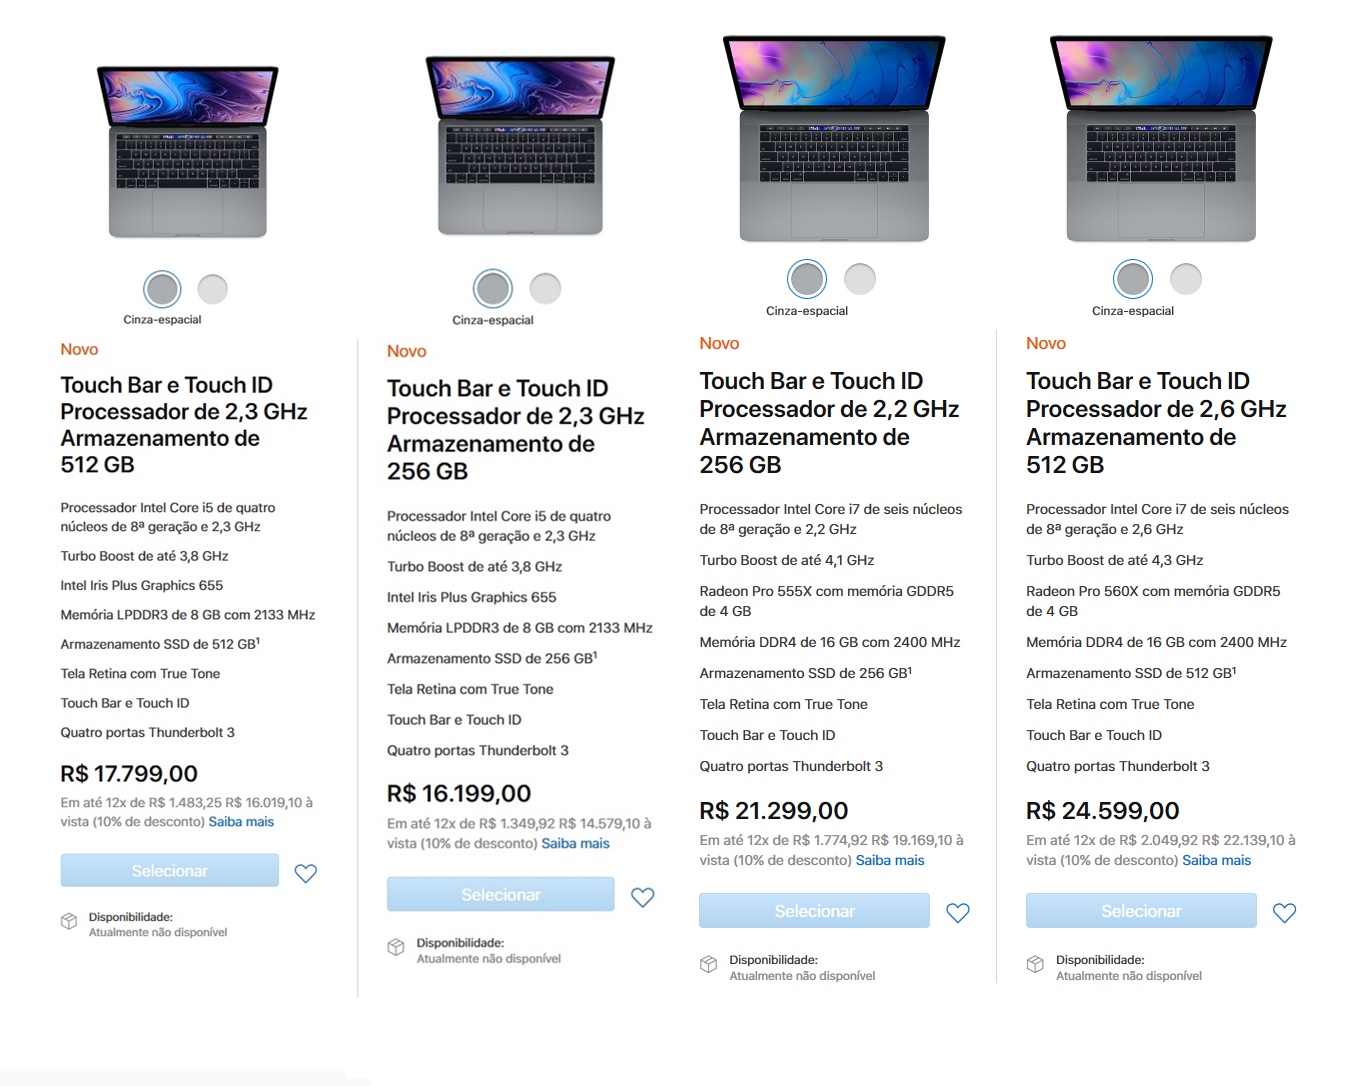 Apple revela preços dos novos MacBooks Pro com chip de 8ª ger. no Brasil Macbooks-8-ger-12135433200083